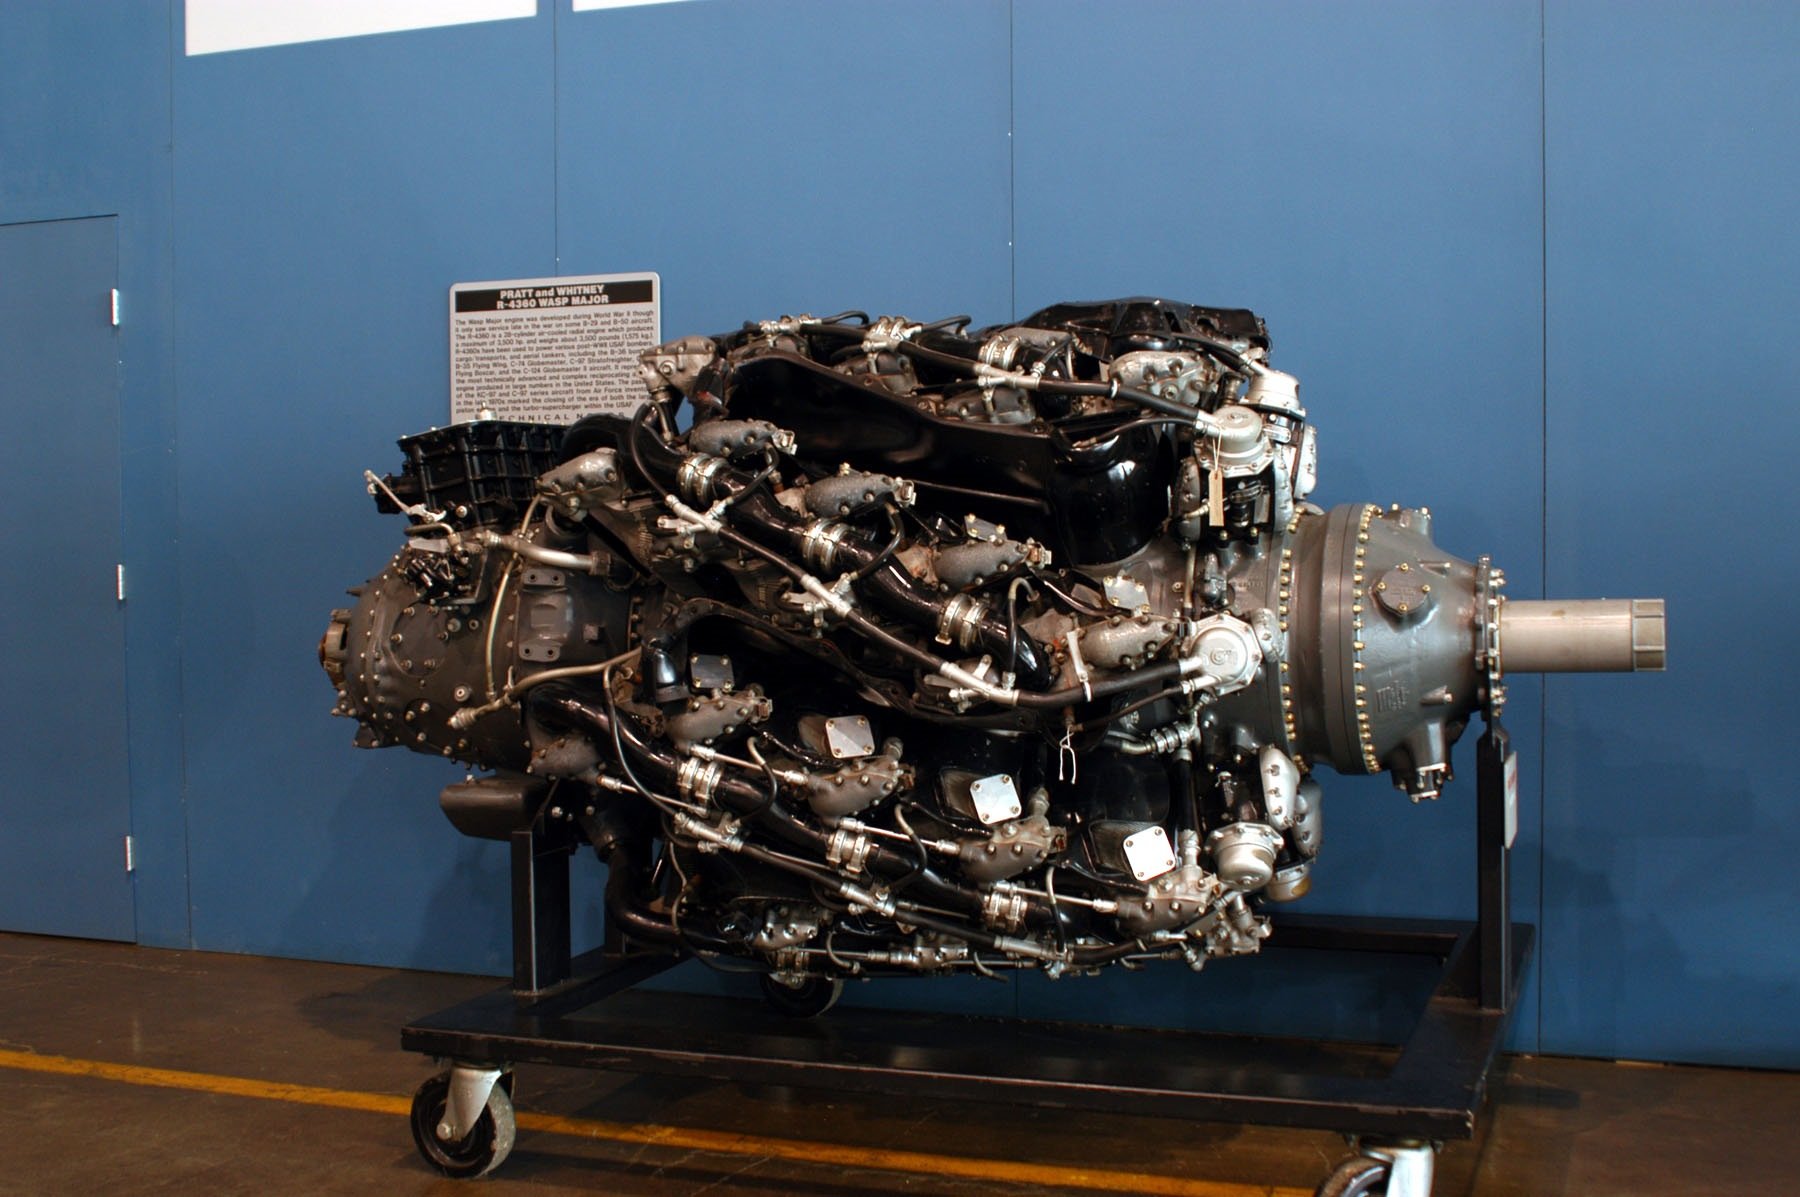 Купить двигатель архангельск. Двигатель Pratt Whitney r-4360. Pratt & Whitney r-4360 Wasp Major. 28-Цилиндровый двигатель Pratt Whitney aircraft engine. Двигатель Pratt Whitney.